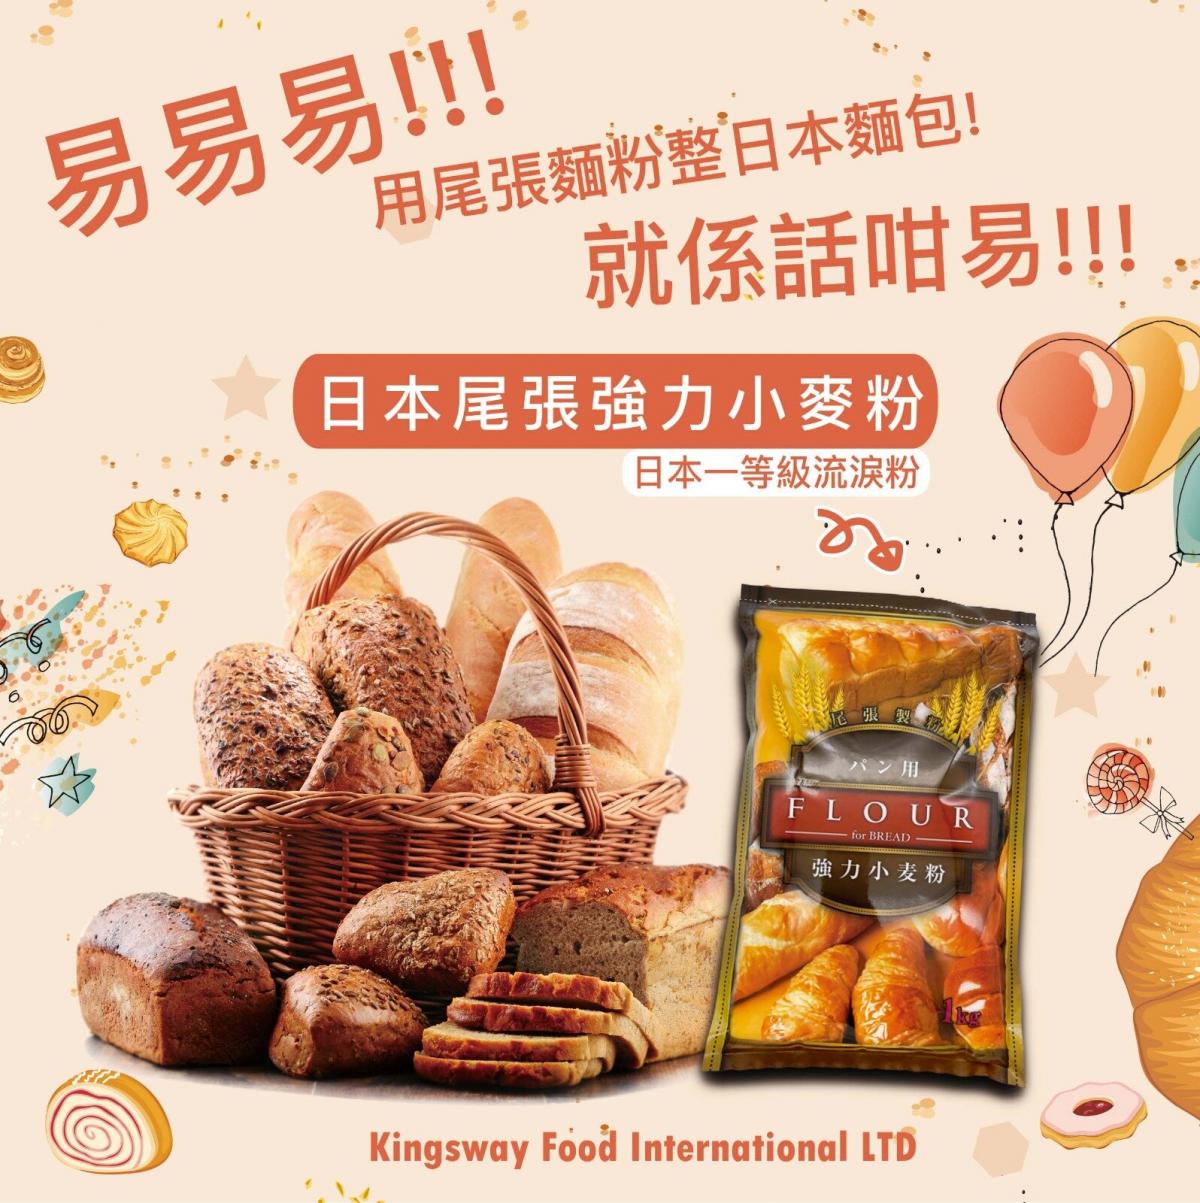 尾張製粉| 尾張日本強力小麥粉(高筋麵包粉) 1kg | HKTVmall 香港最大網購平台